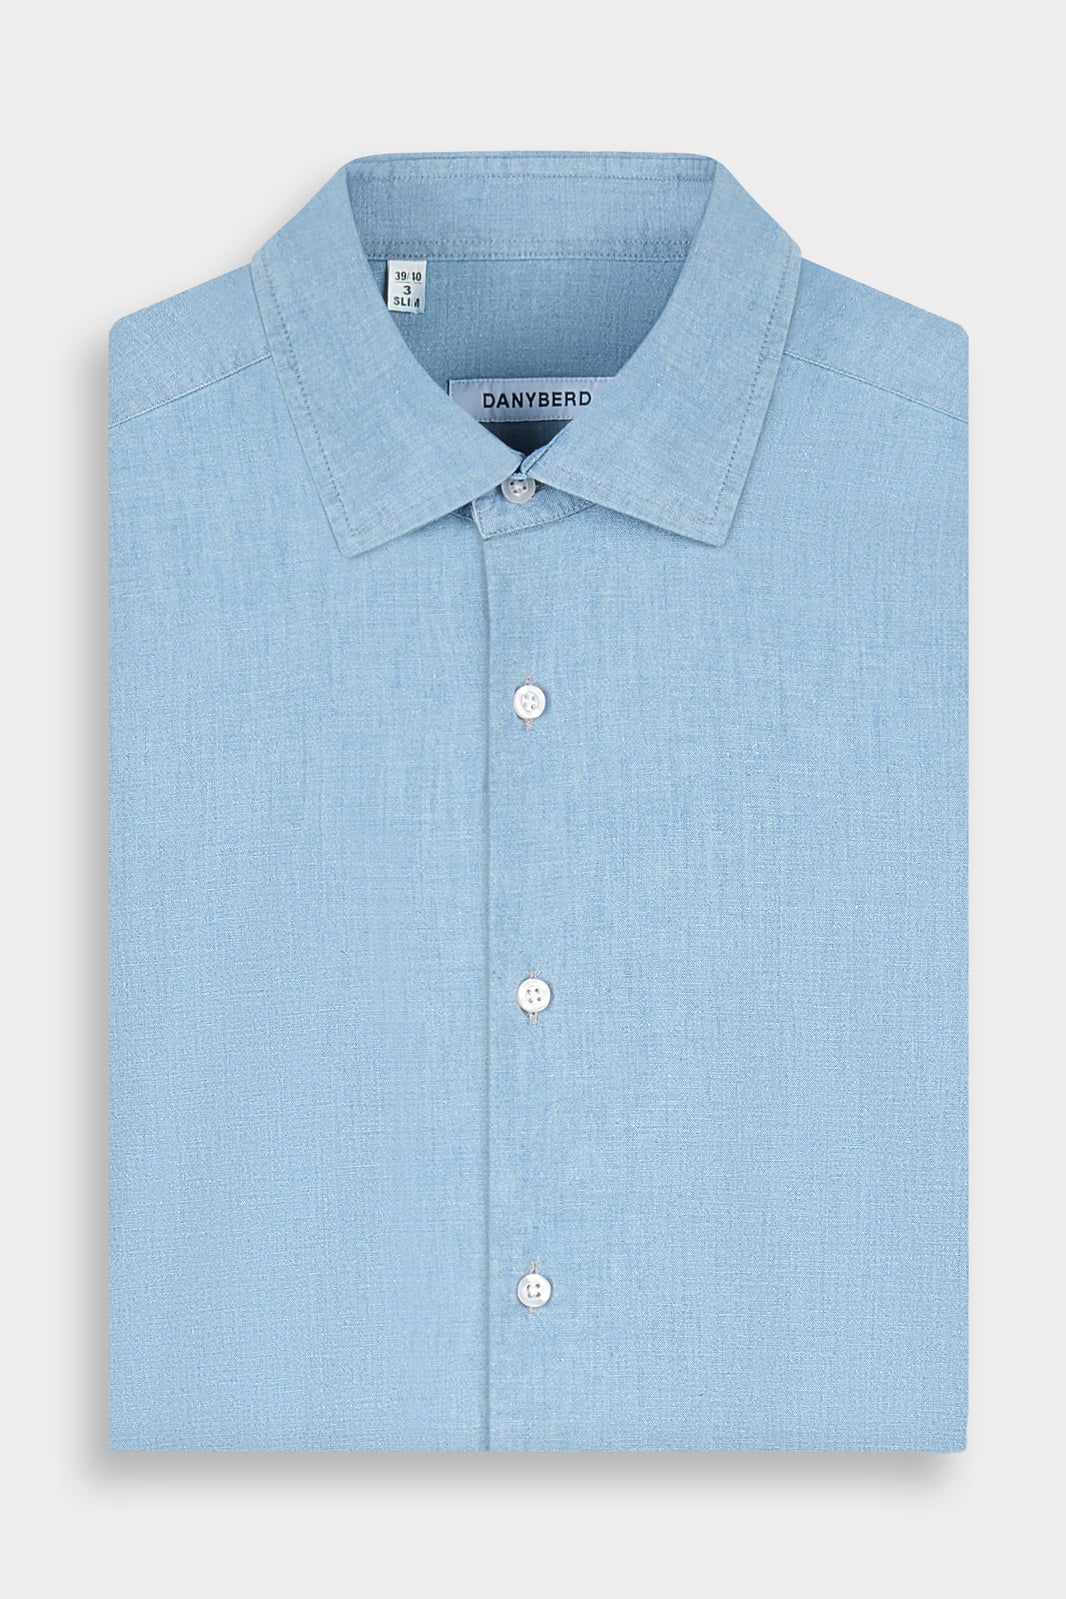 Chemise en jean clair avec col traditionnel et boutons blancs.